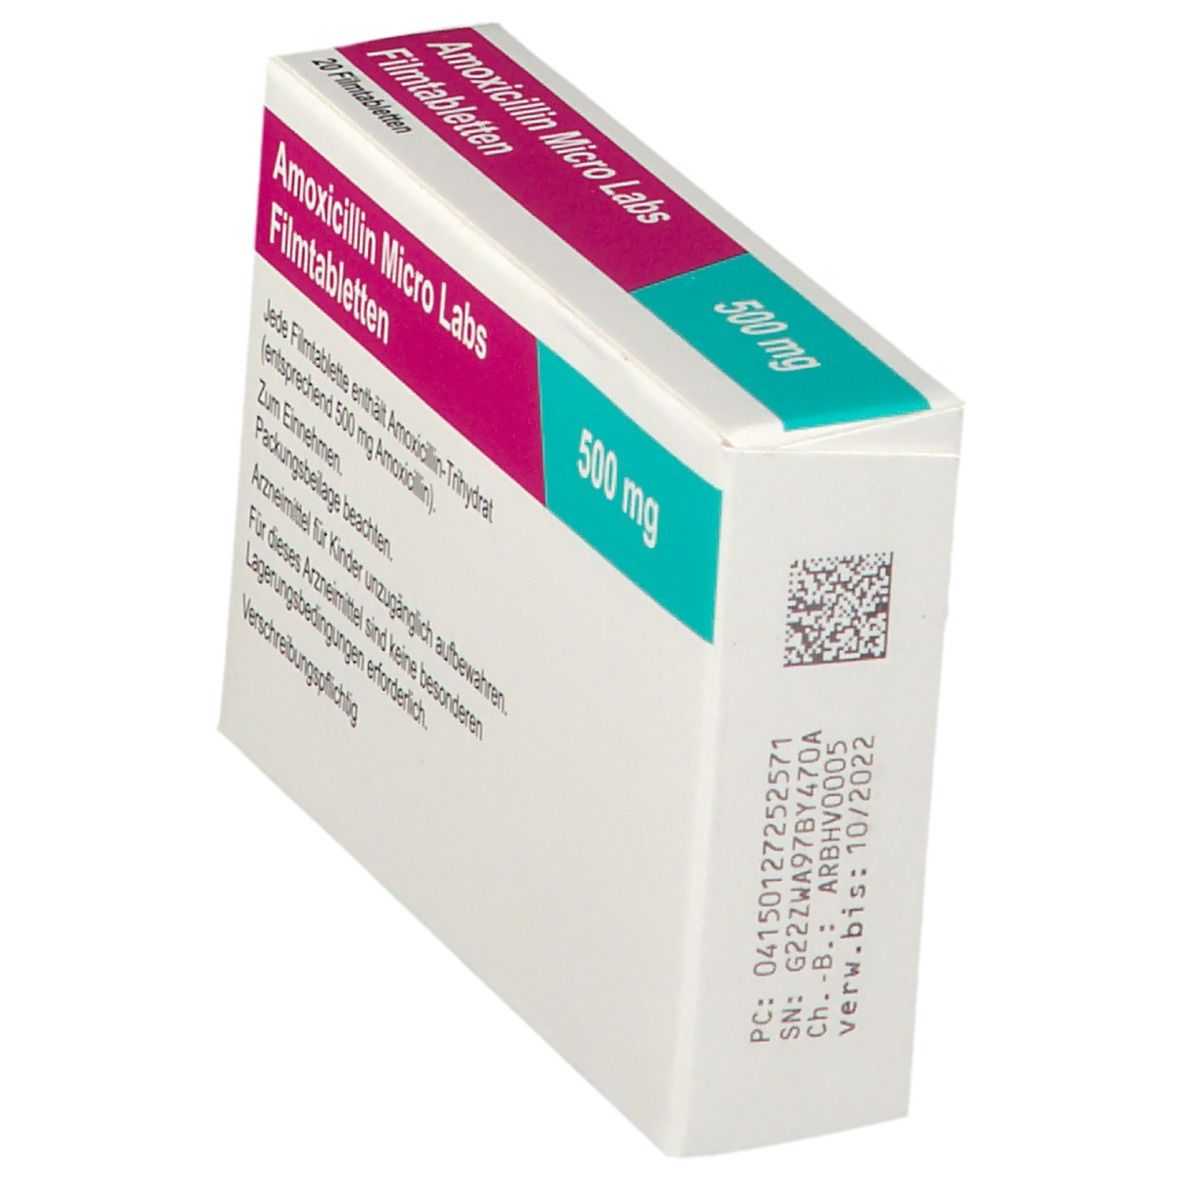 Amoxicillin Micro Labs 500 mg